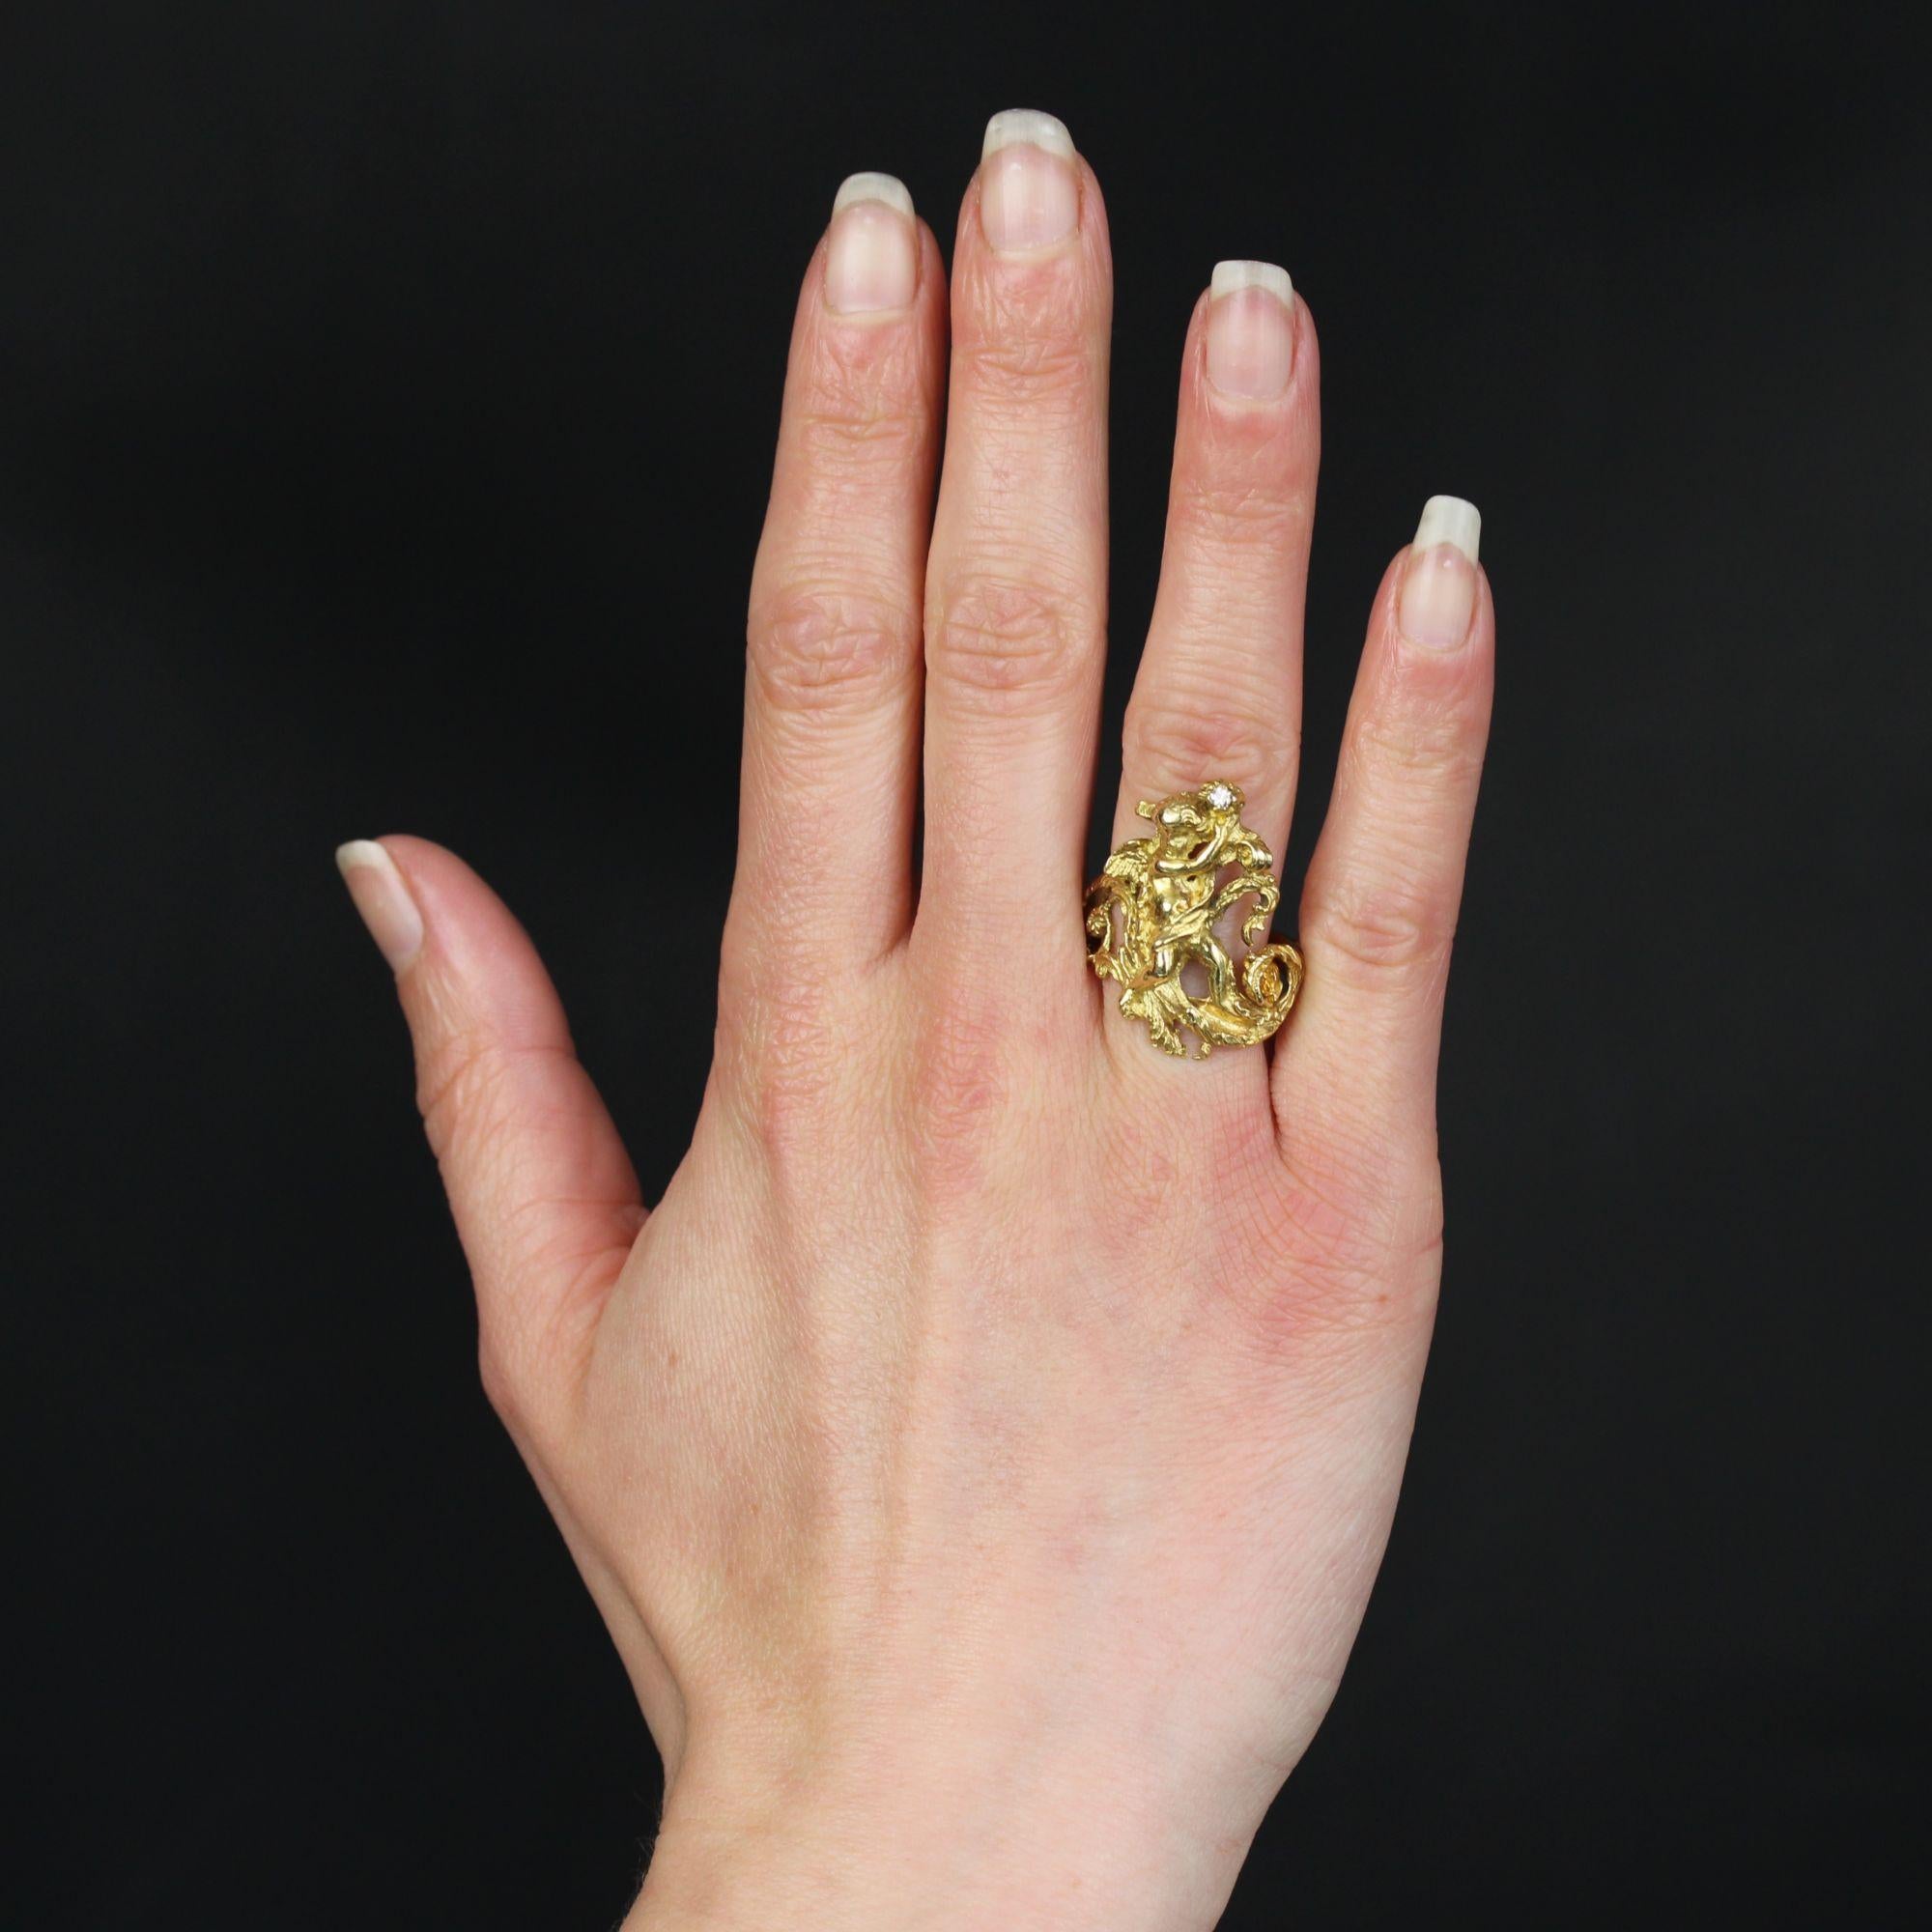 Ring aus 18 Karat Gelbgold.
Die Fassung dieses bedeutenden antiken Rings ist rundherum und auf der Oberseite mit Pflanzenmotiven, Arabesken und einem bezaubernden kleinen Engel graviert, der einen kleinen Brillanten in den Händen über dem Kopf hält.